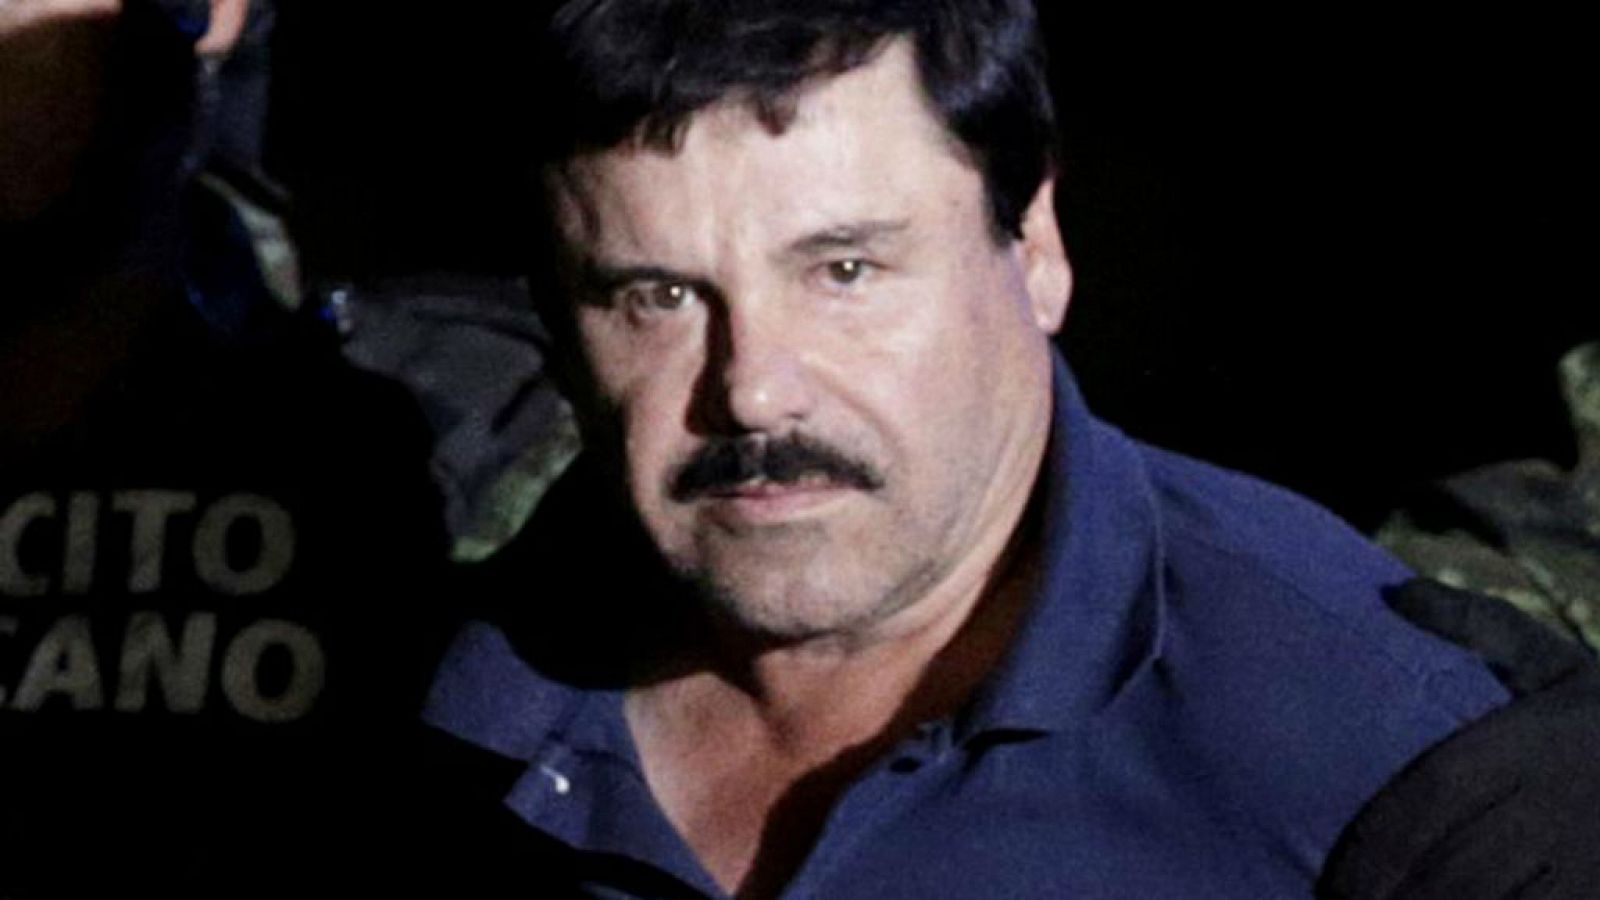  24 horas - "El Chapo" Guzmán declarado culpable por todos los delitos que se le imputaban - escuchar ahora